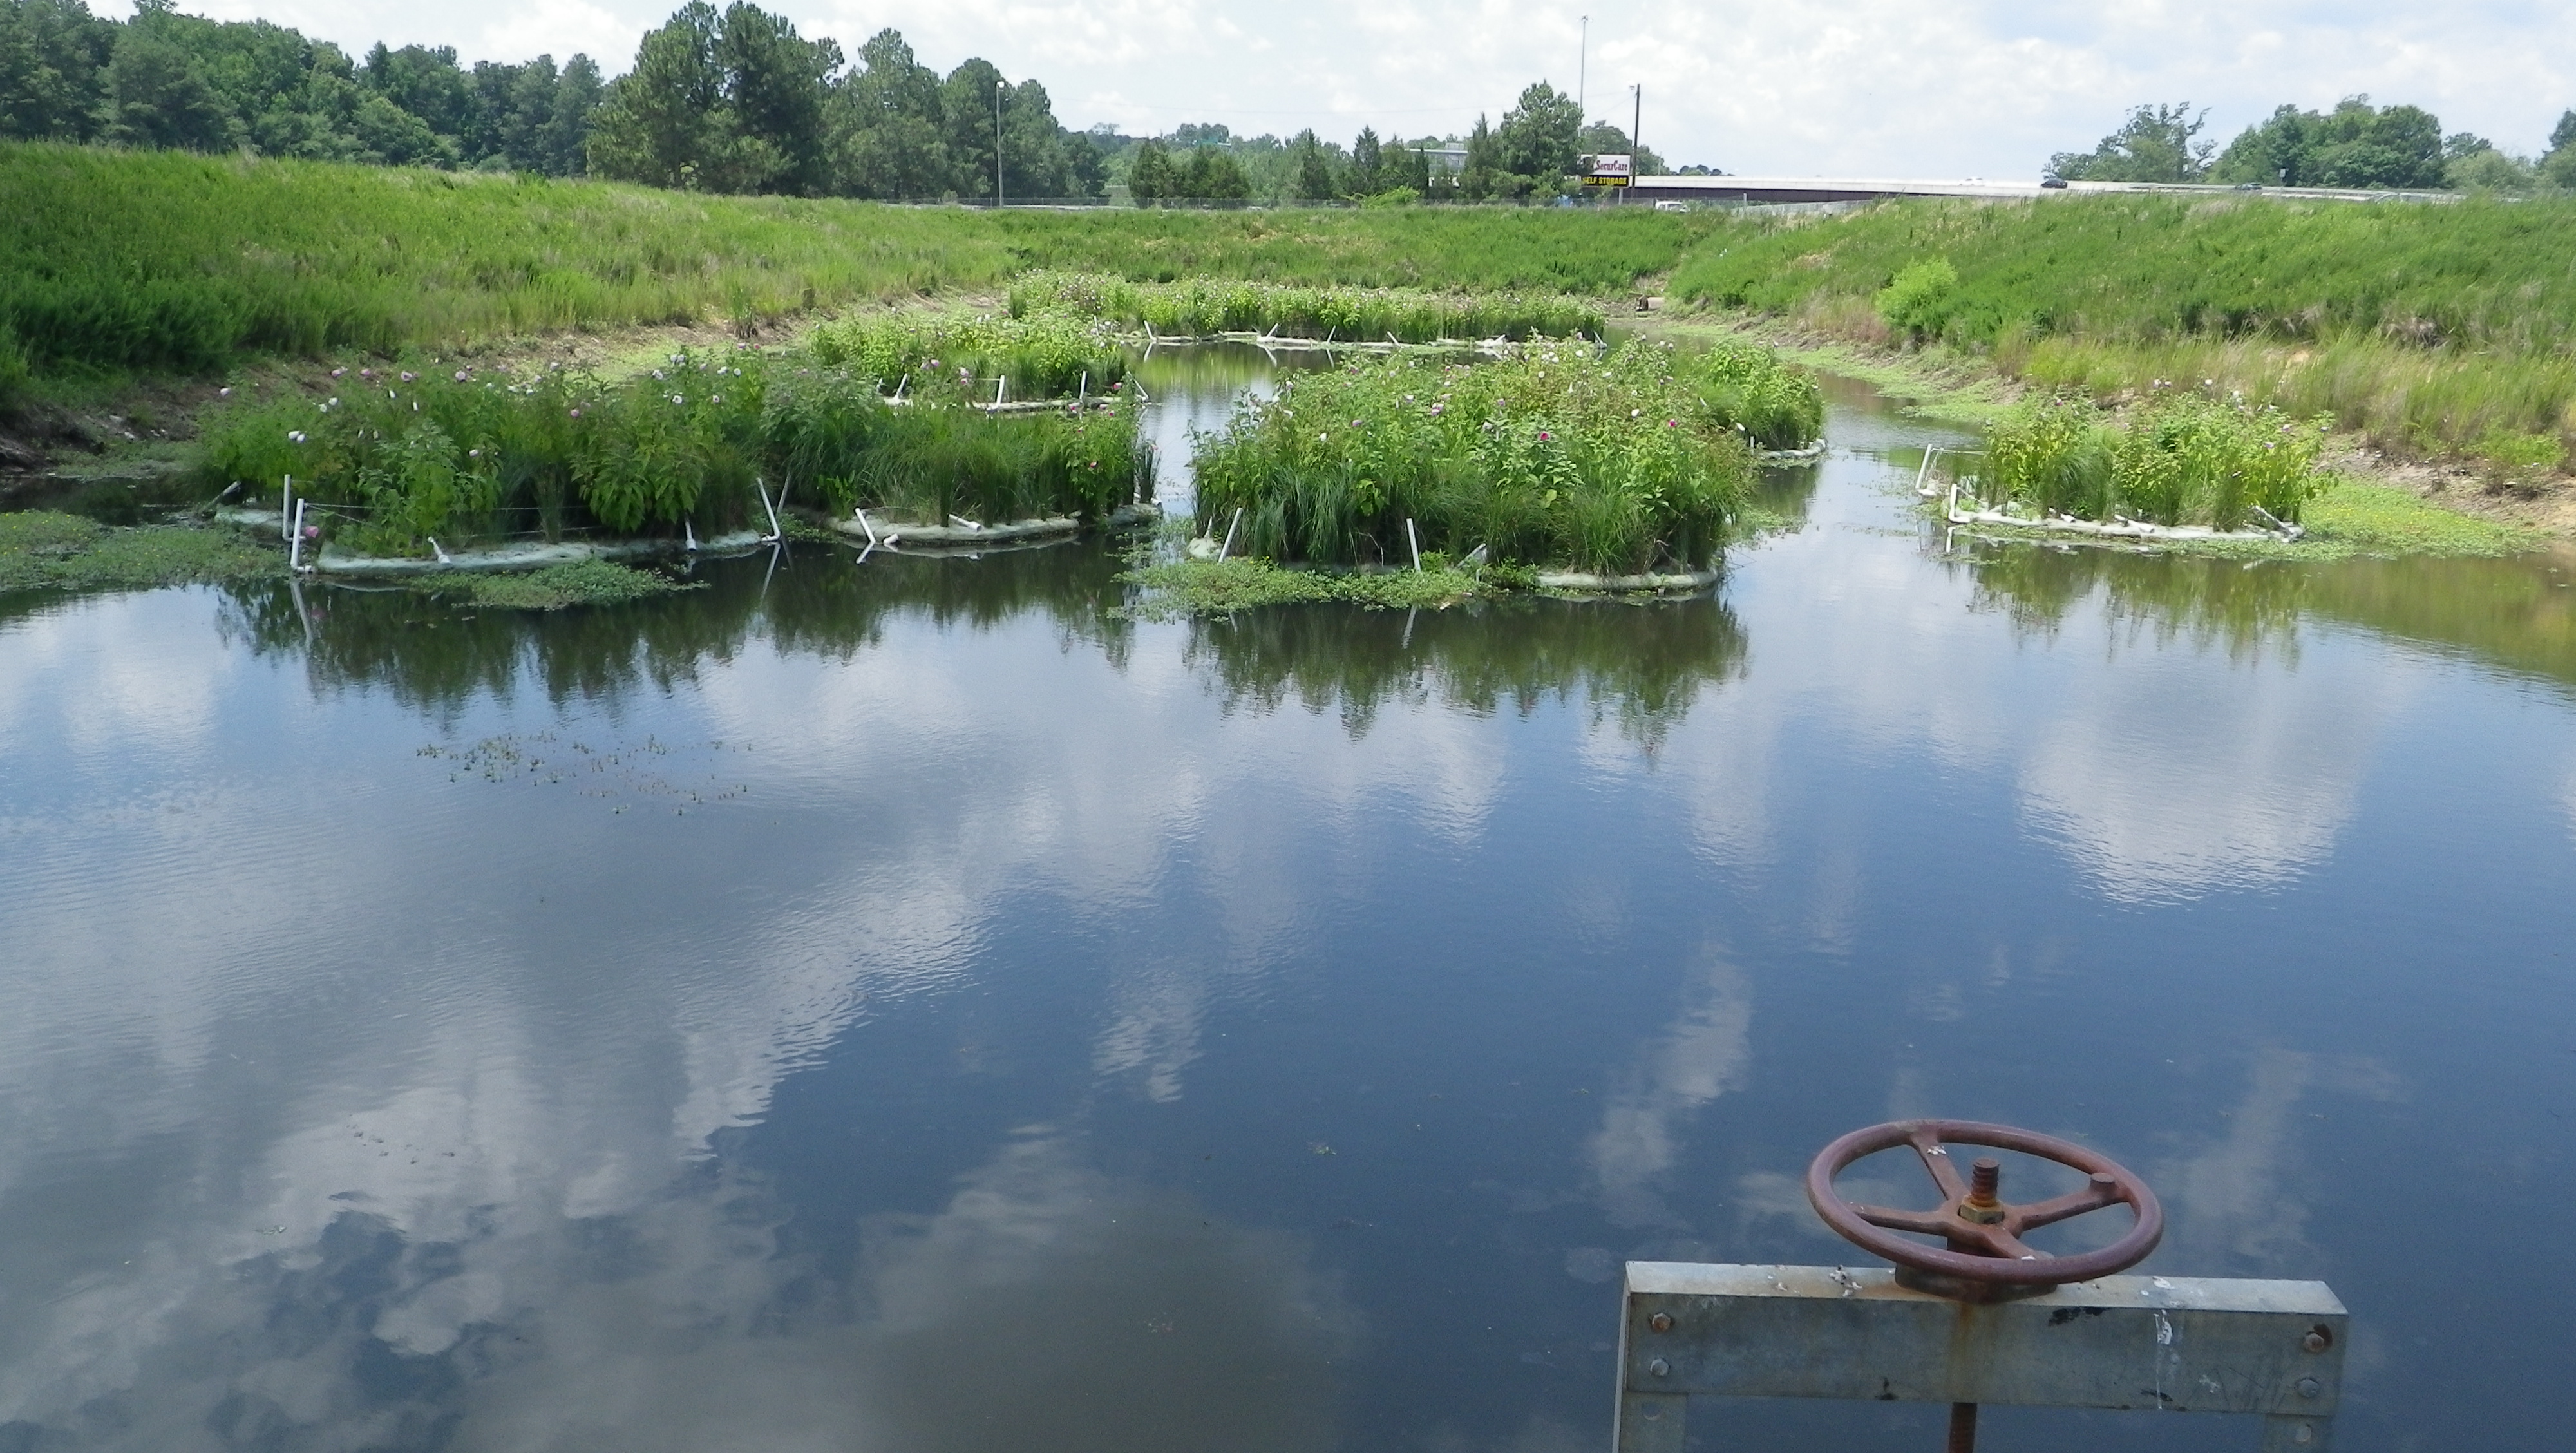 Floating Treatment Wetlands Show Promise as Pond Retrofit